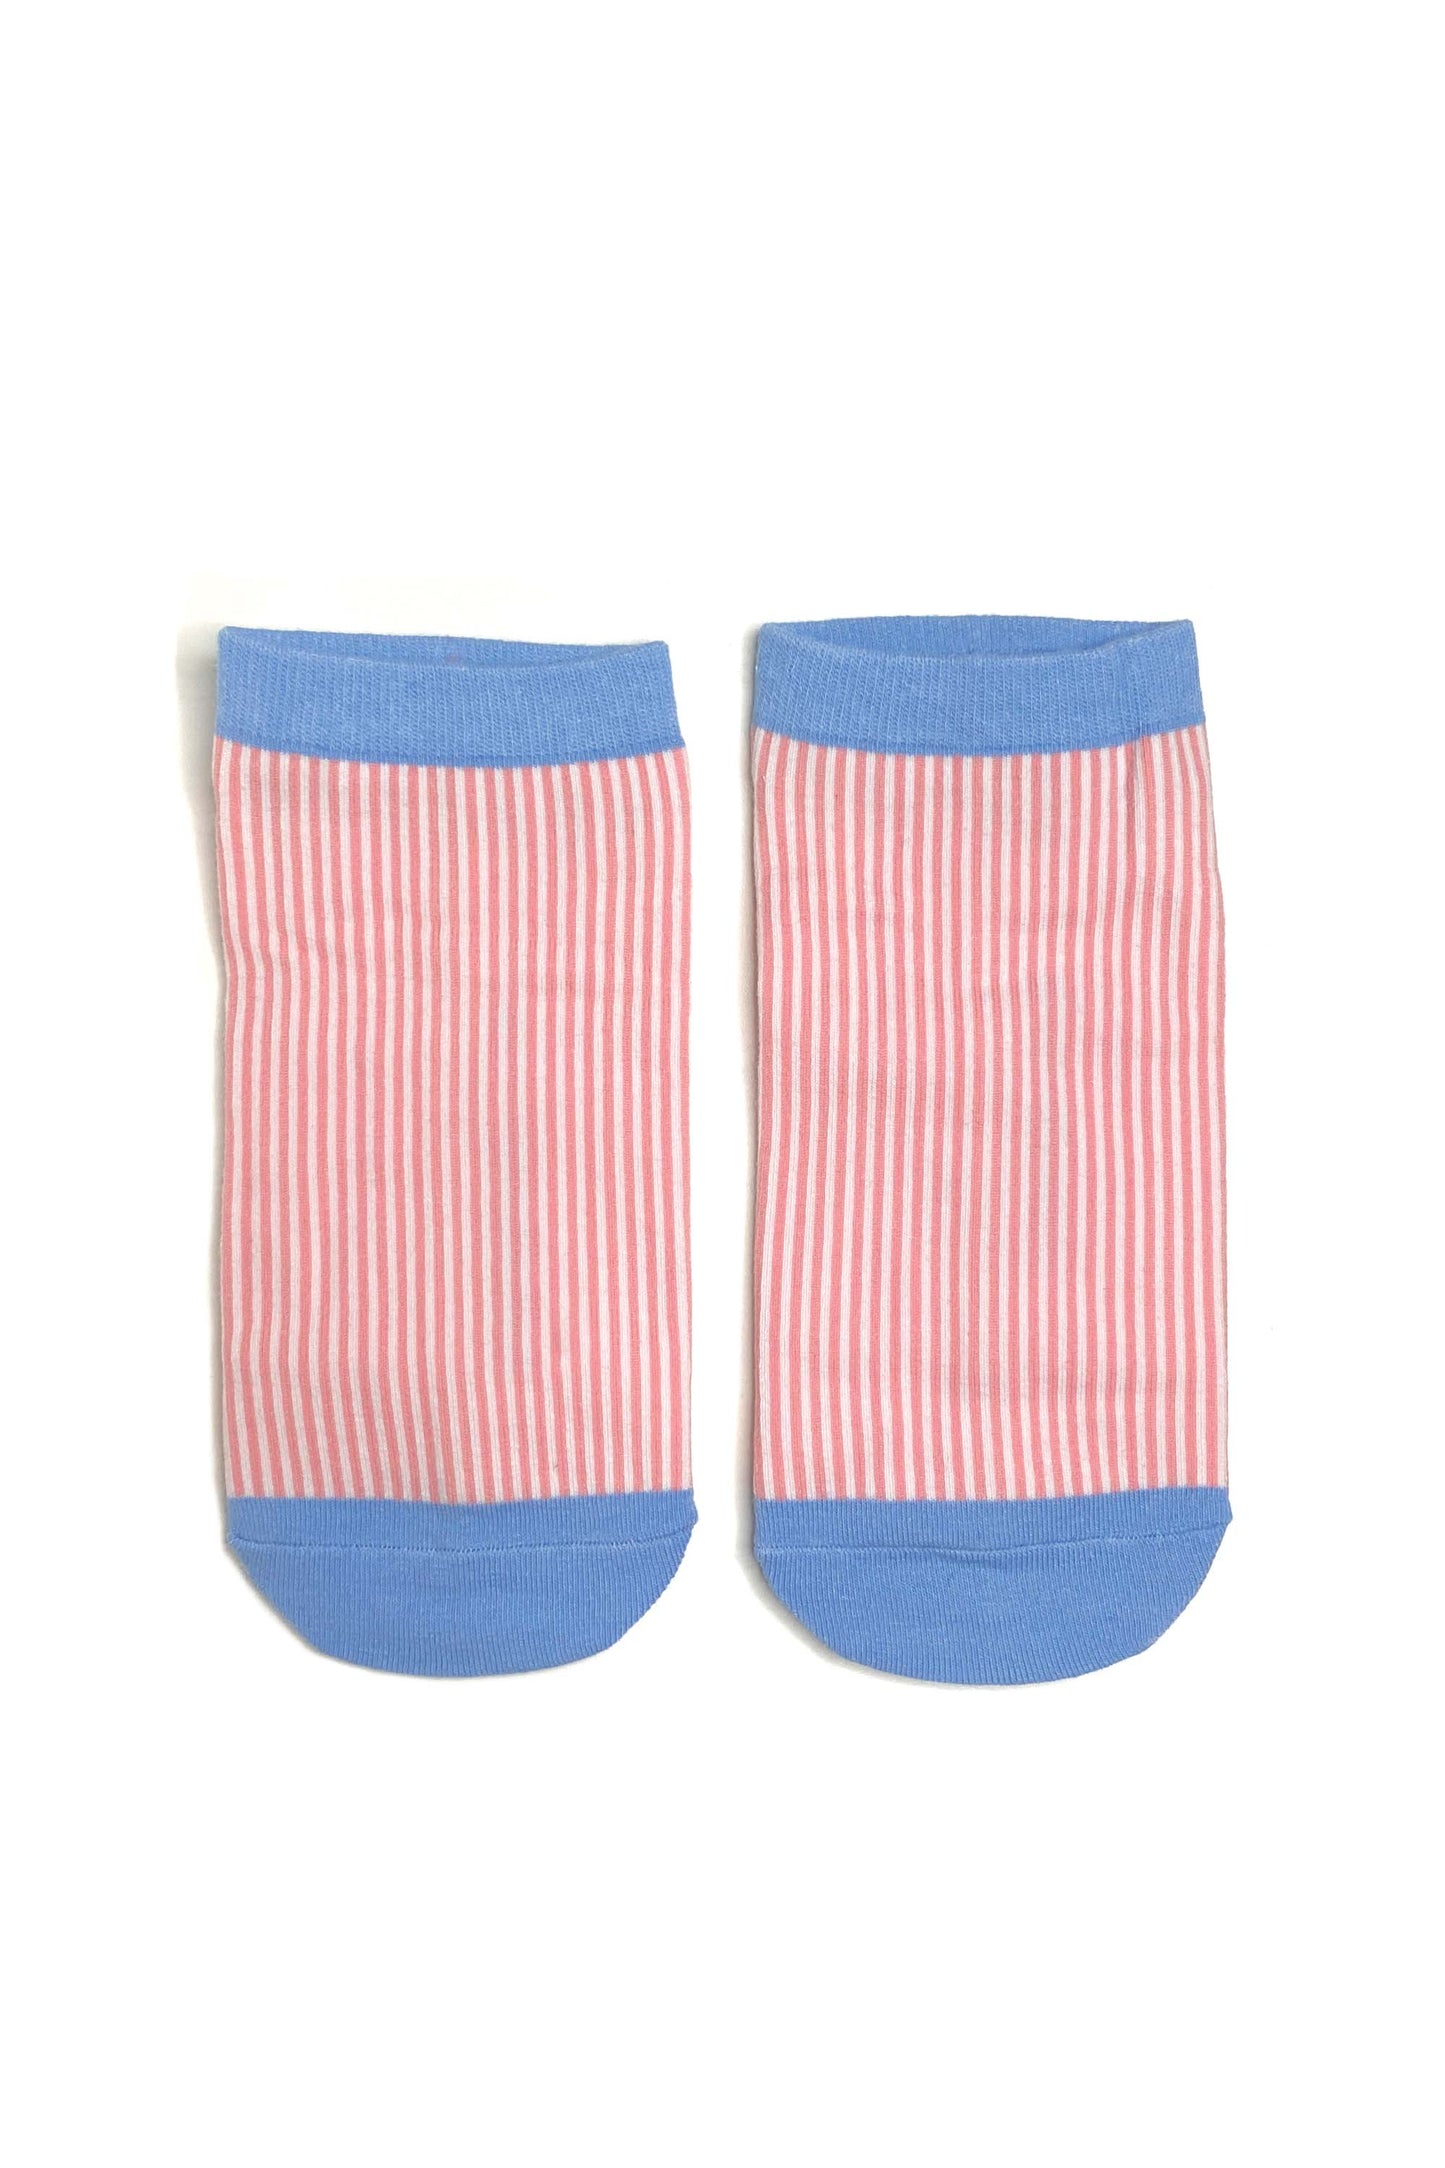 Caja de calcetines tobilleros para adultos | 6 pares